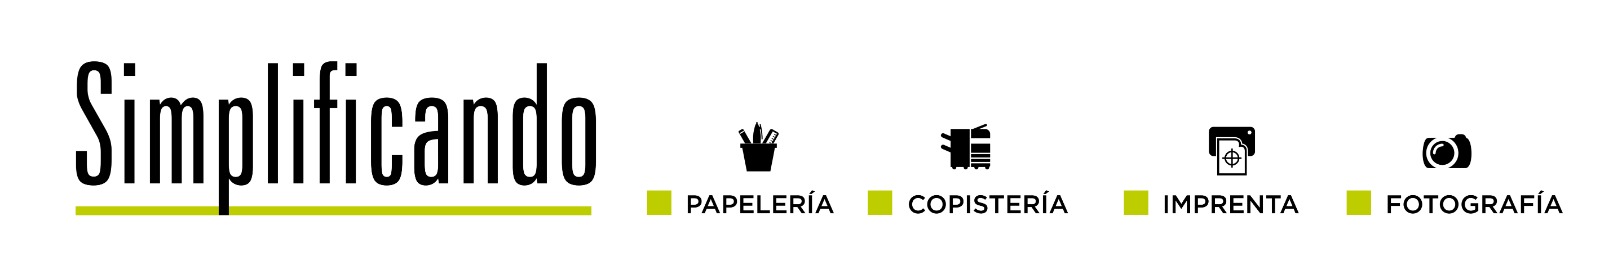 Simplificando | Papeleria, Copisteria, Imprenta, Fotografia